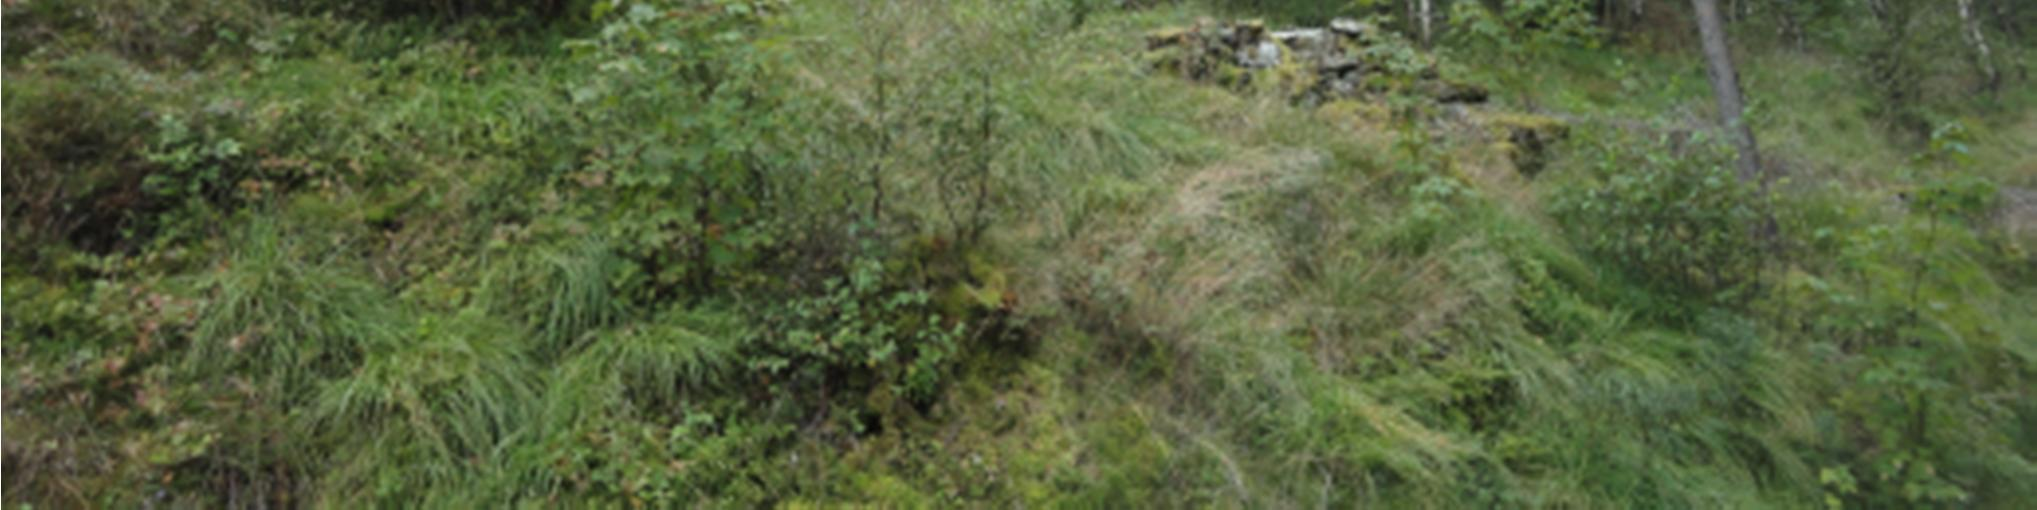 Geologisk rapport for områdeplan 9 av 26 Bilde 2: Skrent ovenfor Sveiarvegen. Konklusjon: Totalstabiliteten av skråningen/skrenten virker å være god.